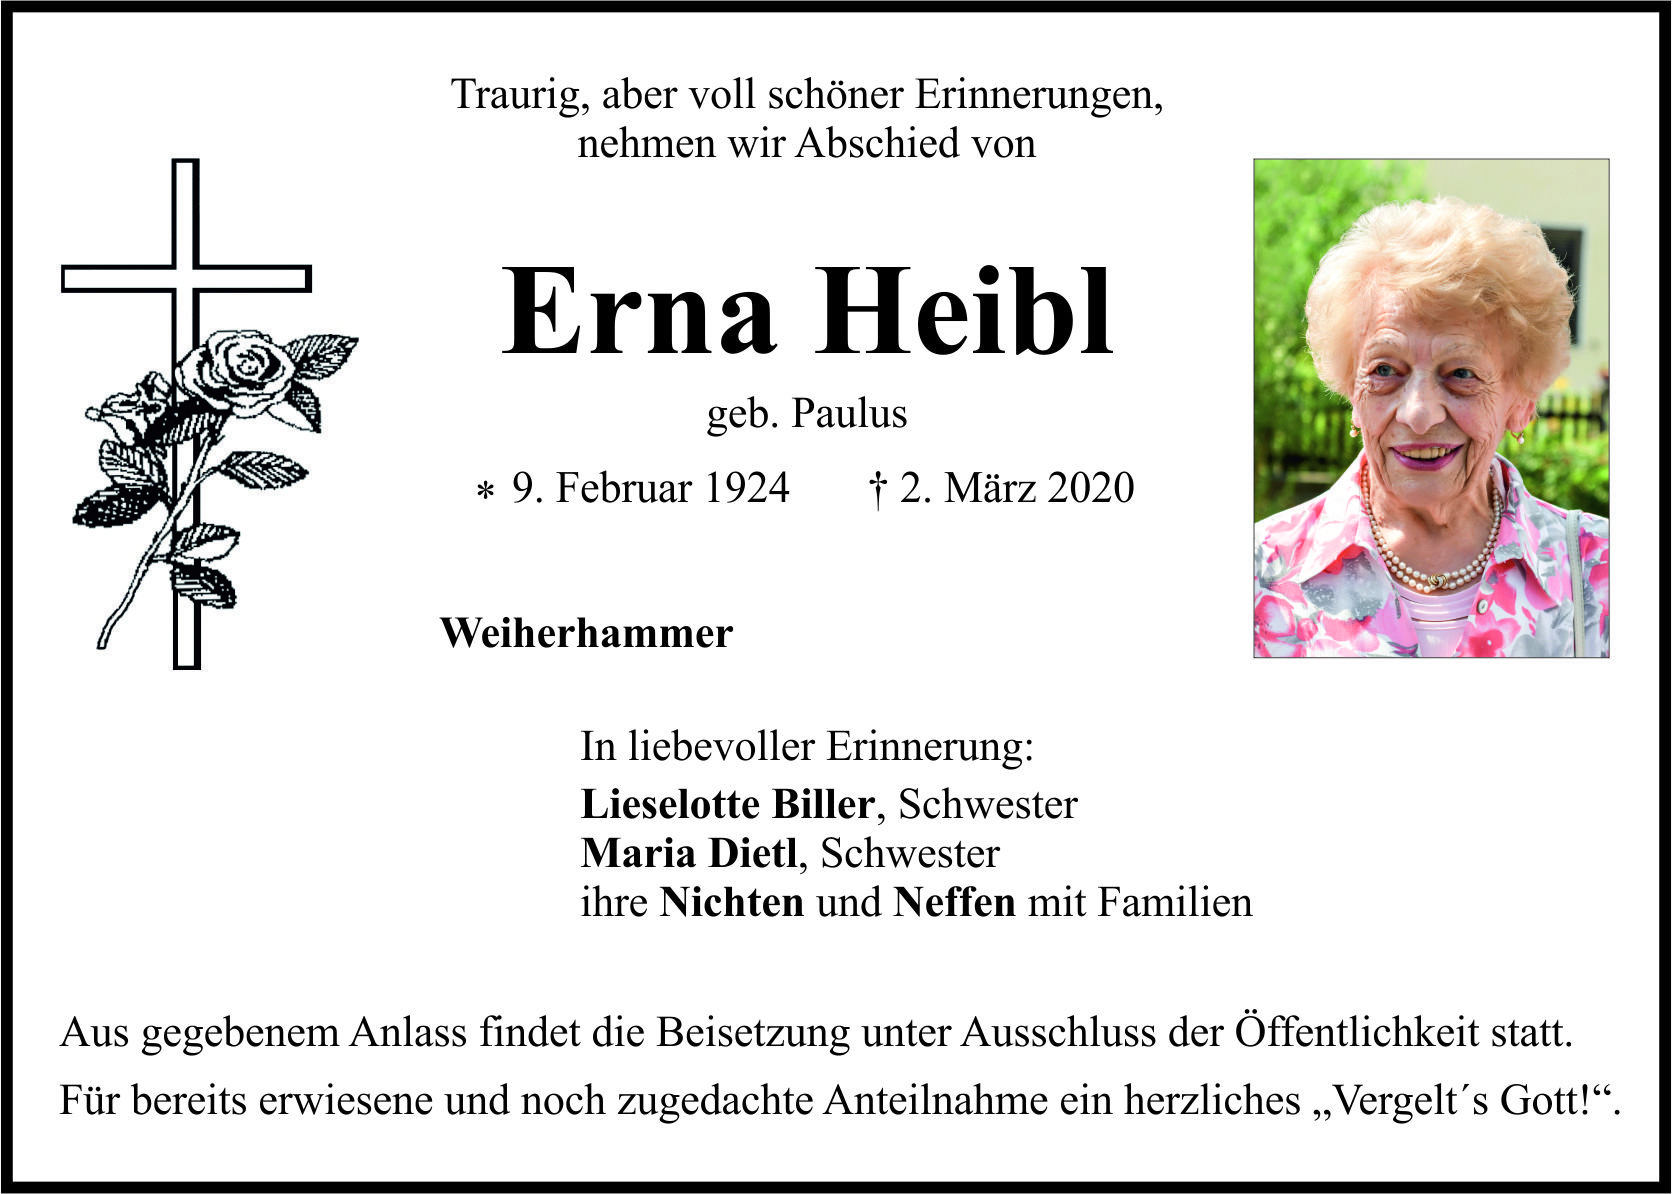 Traueranzeige Erna Heibl, Weiherhammer